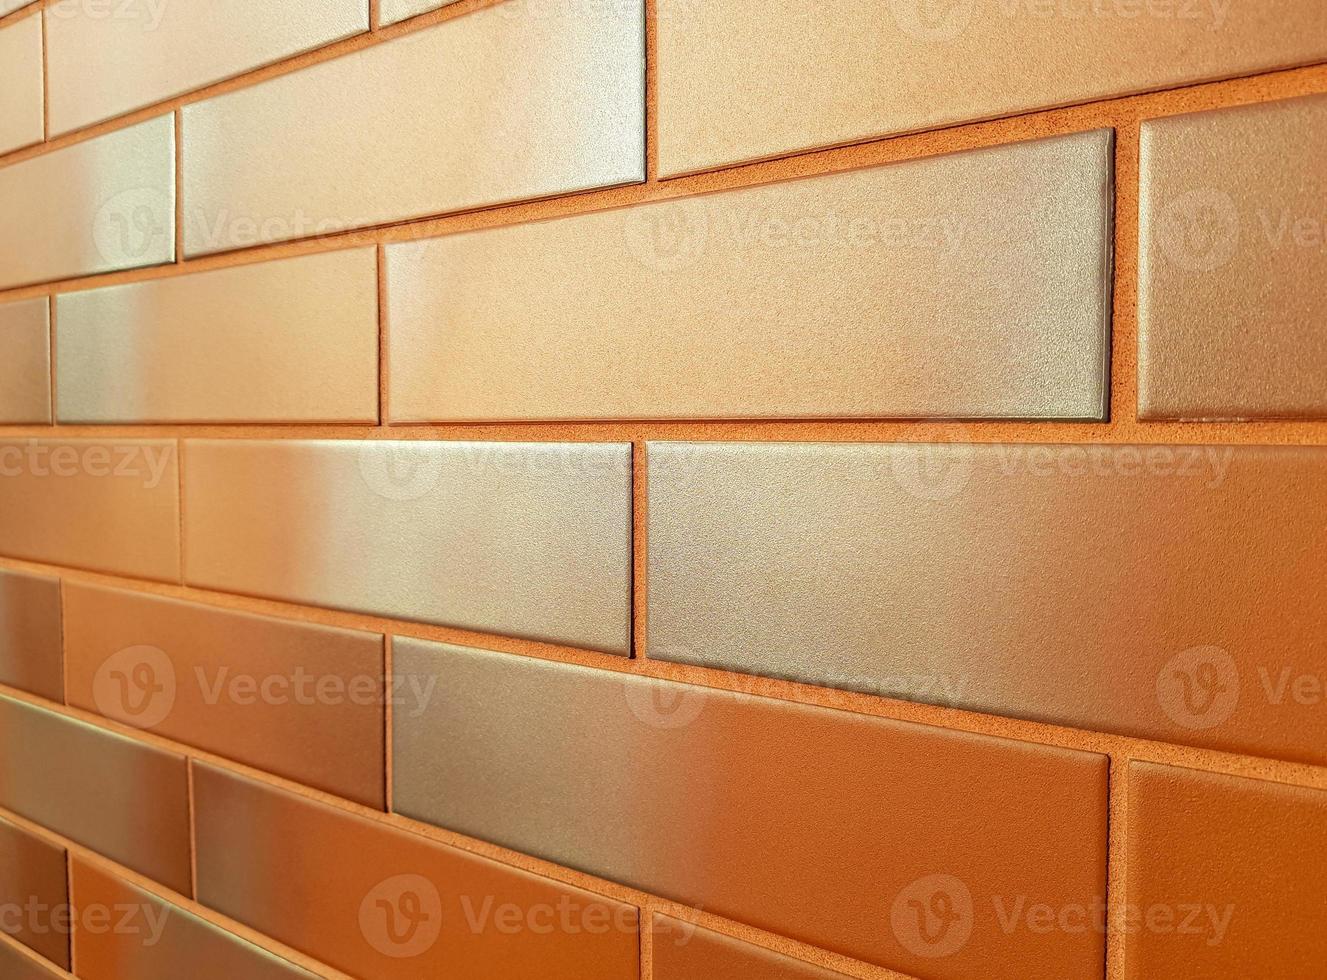 fachada moderna feita de azulejos de cerâmica laranja. tijolos alaranjados brilhantes de parede nova com um tom cinza prateado, brilhando ao sol. perspectiva horizontal recuando na distância. espaço de cópia de fundo. foto